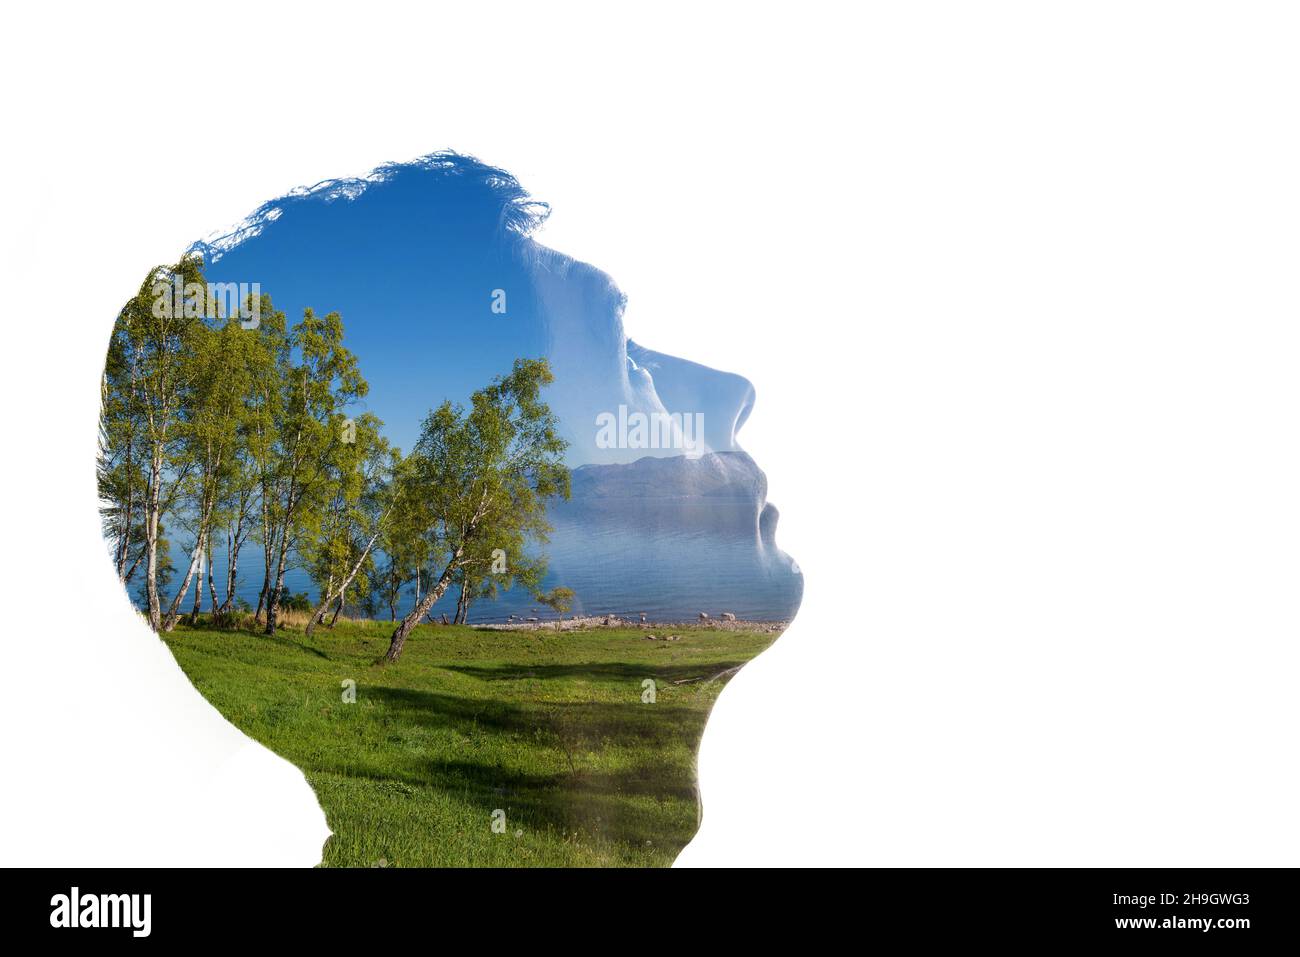 Kombination aus einer Silhouette eines Gesichts und einer Landschaft mit Bäumen, Gras, Himmel und Wasser. Konzept der Verbindung zwischen Mensch und Natur Stockfoto